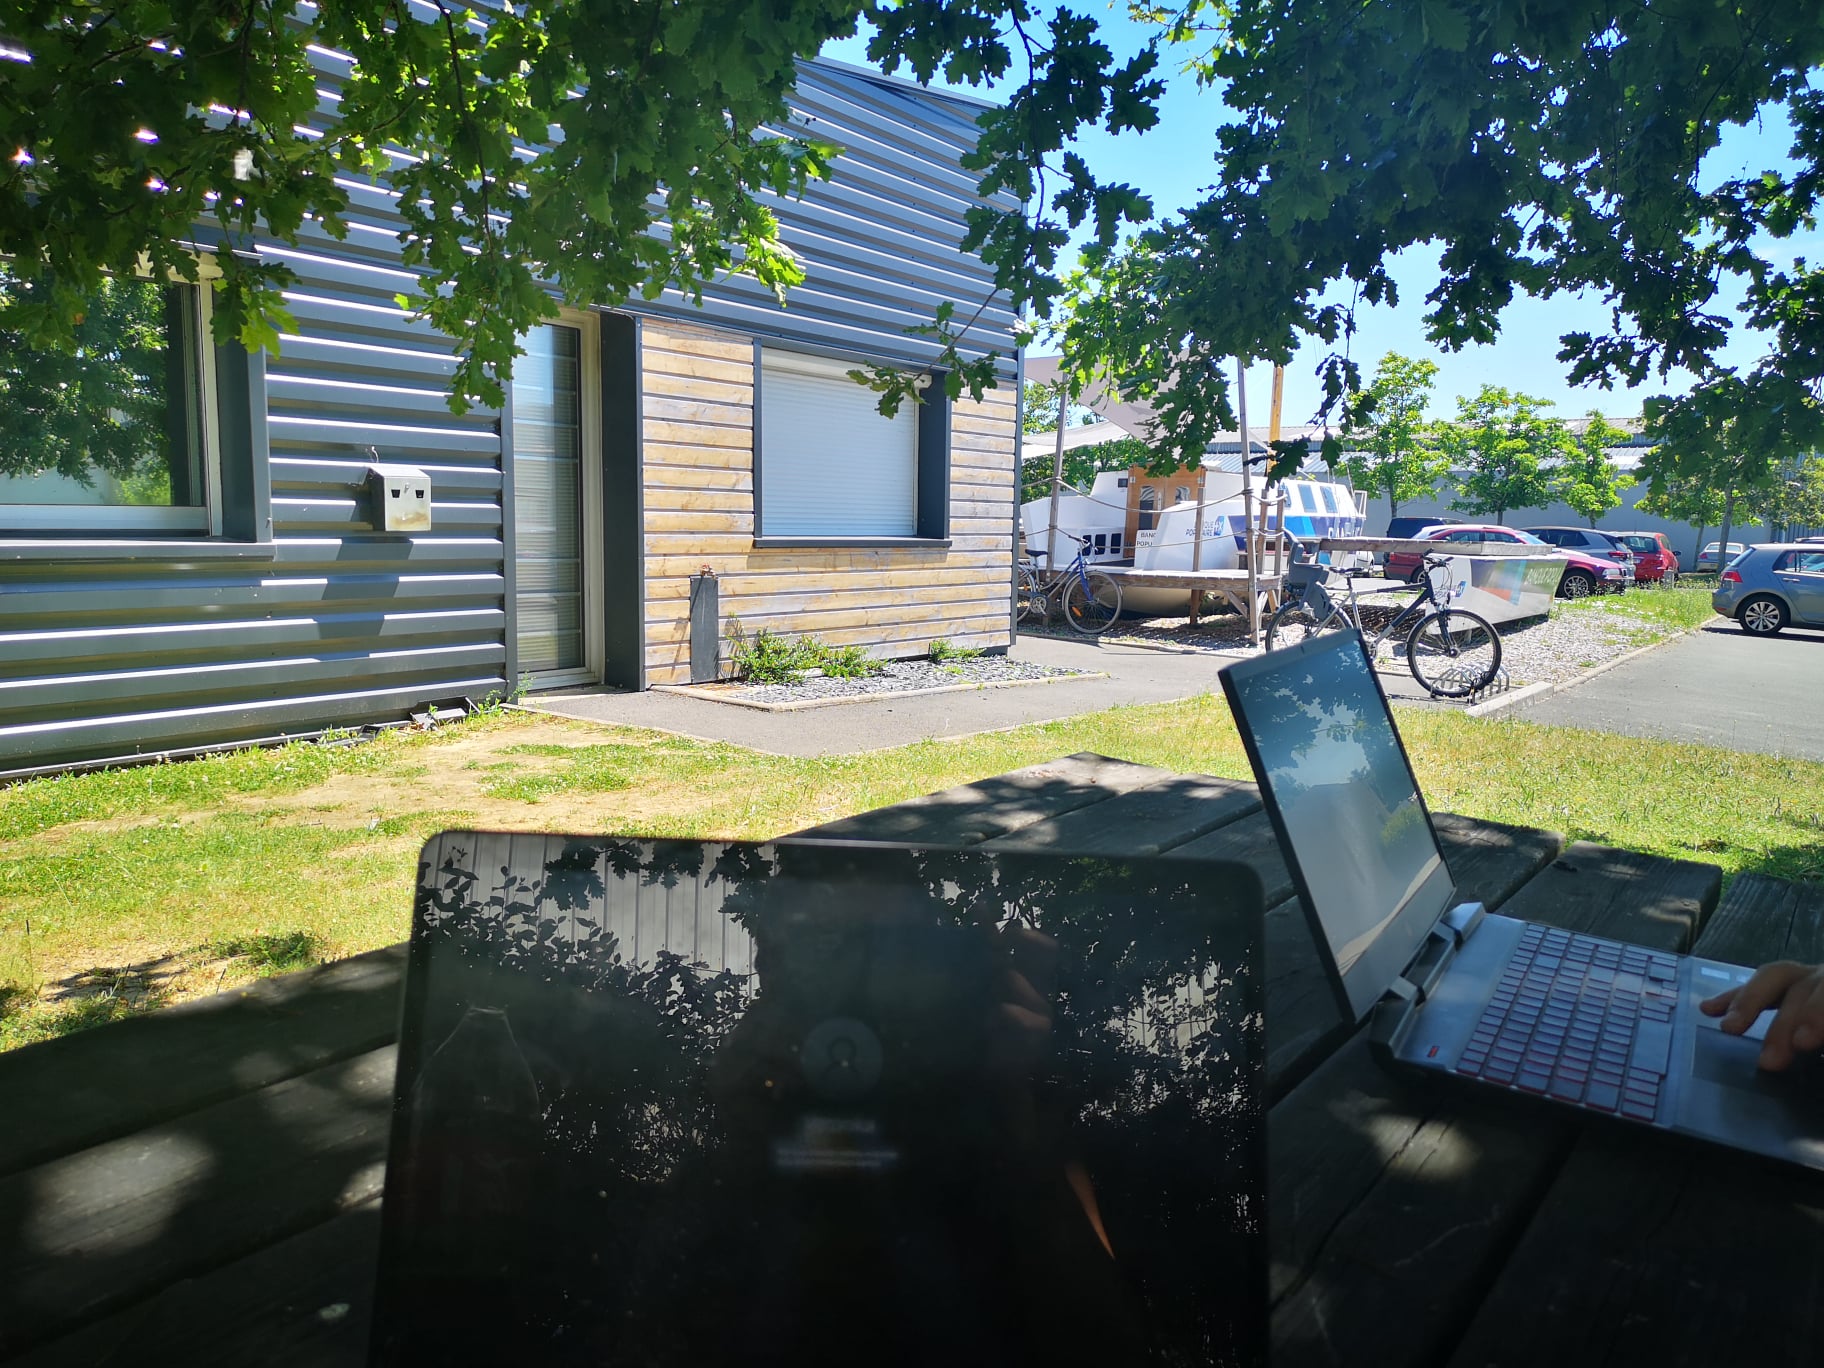 Image de travail sur une table sous l'arbre en été